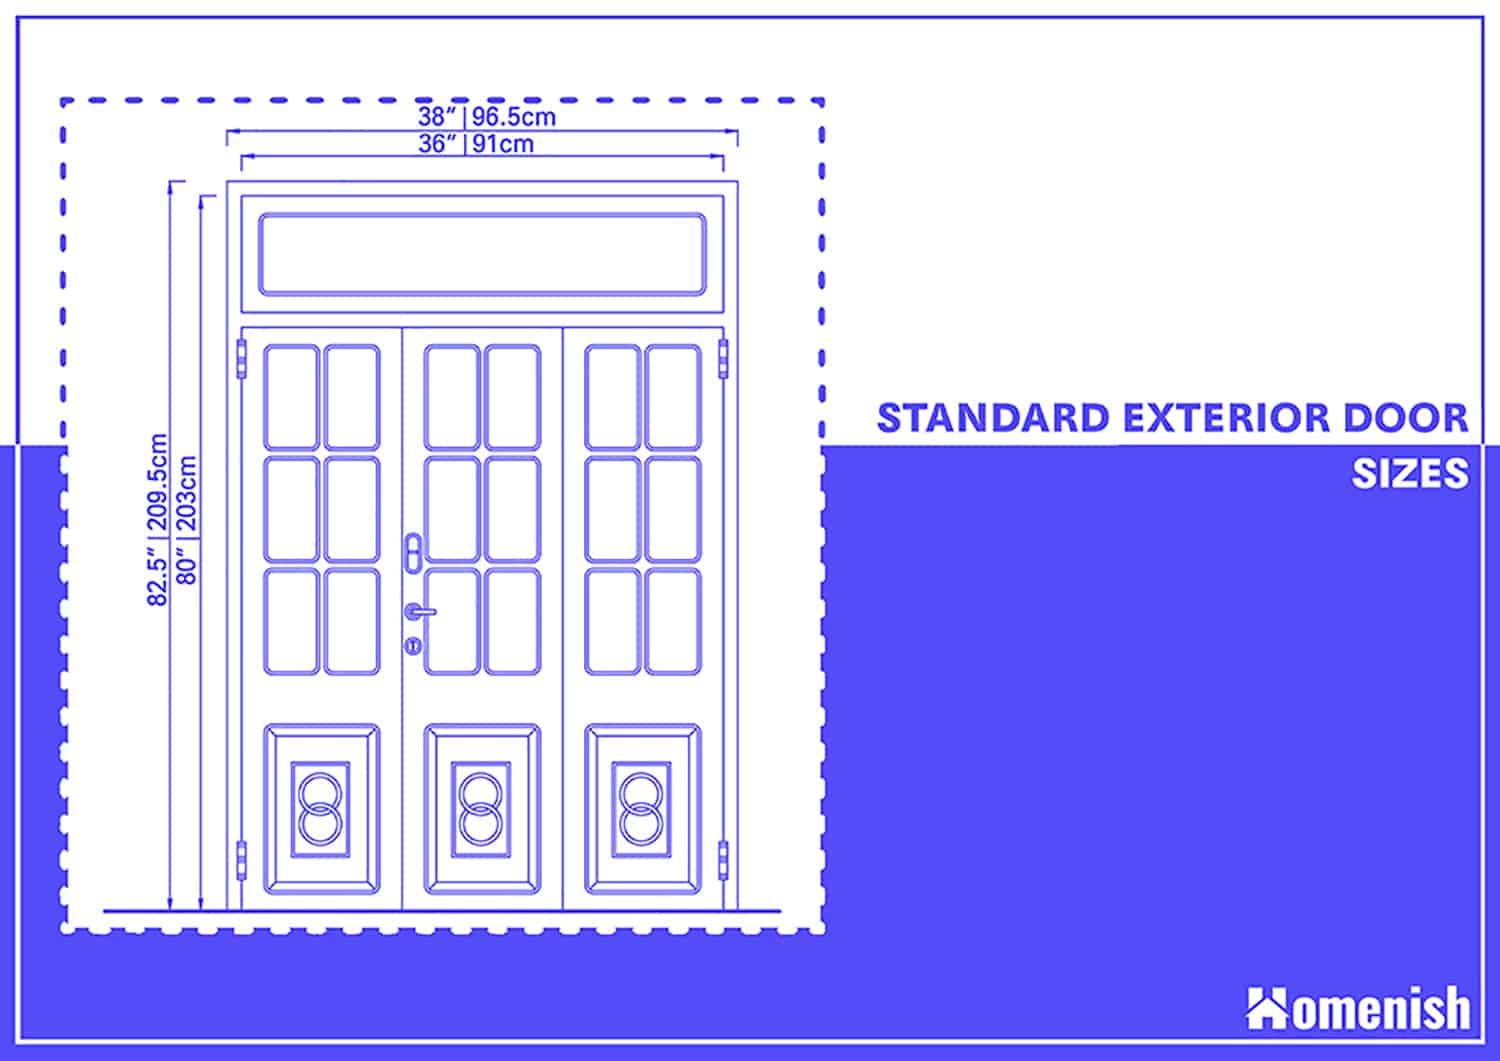 Standard Exterior Door Sizes